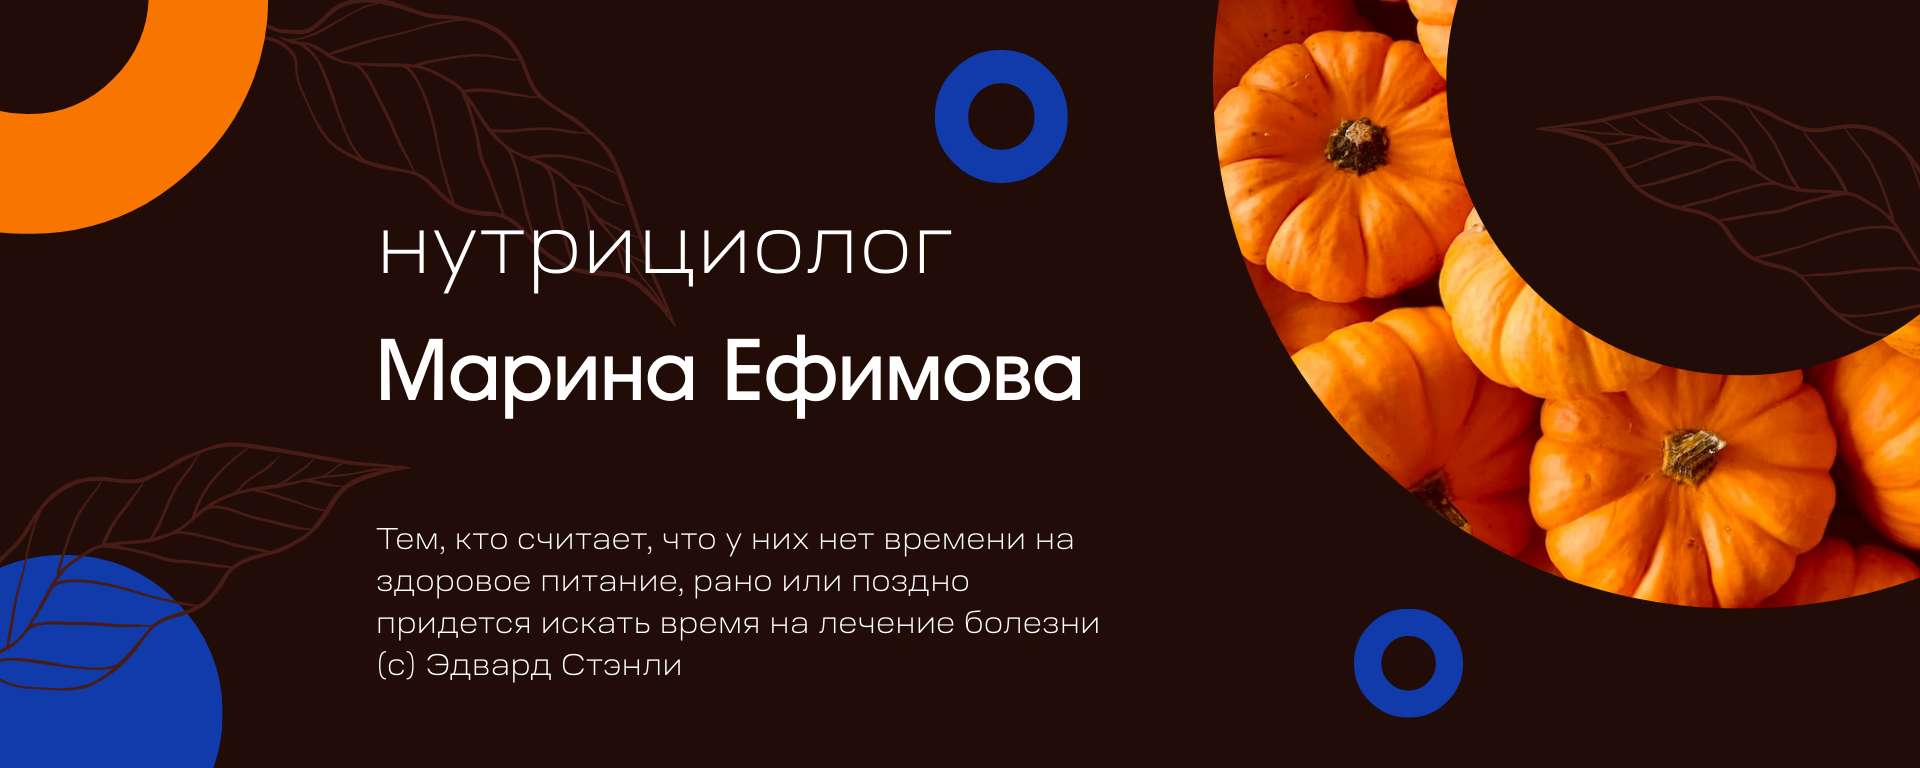 Оранжево-коричневая обложка сообщества Вконтакте для нутрициолога